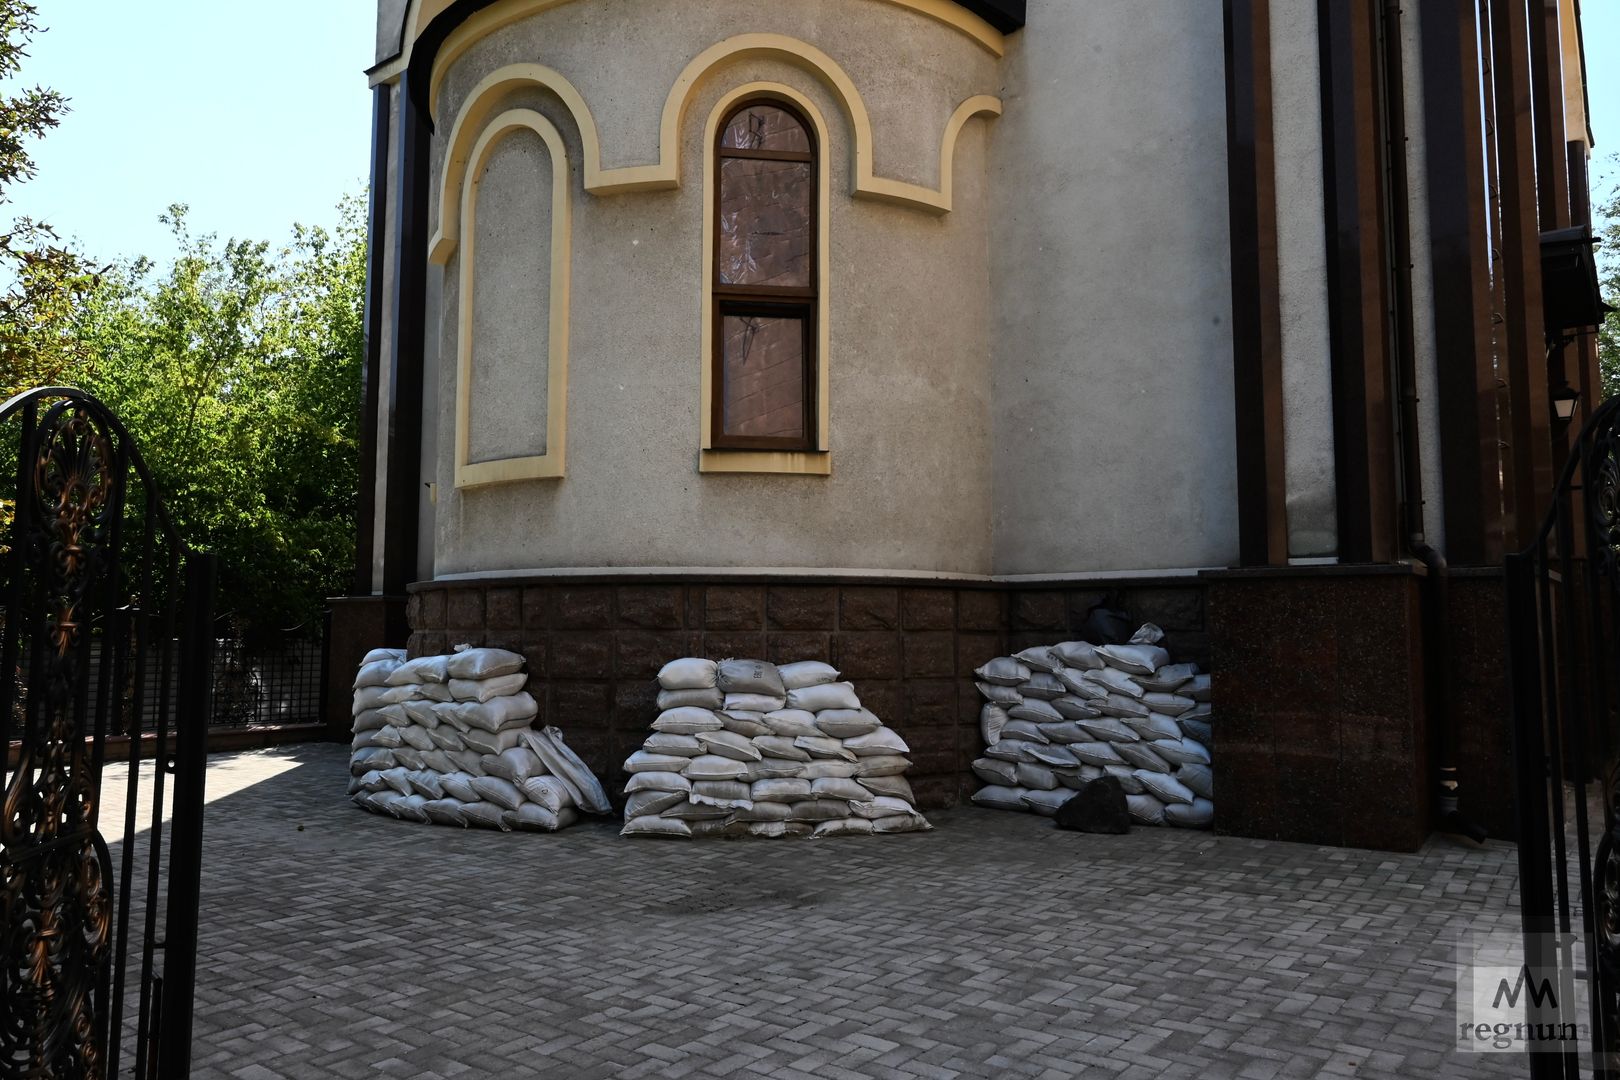 Фортификации из мешков с песком для укрепления стен и окон у входа в храм